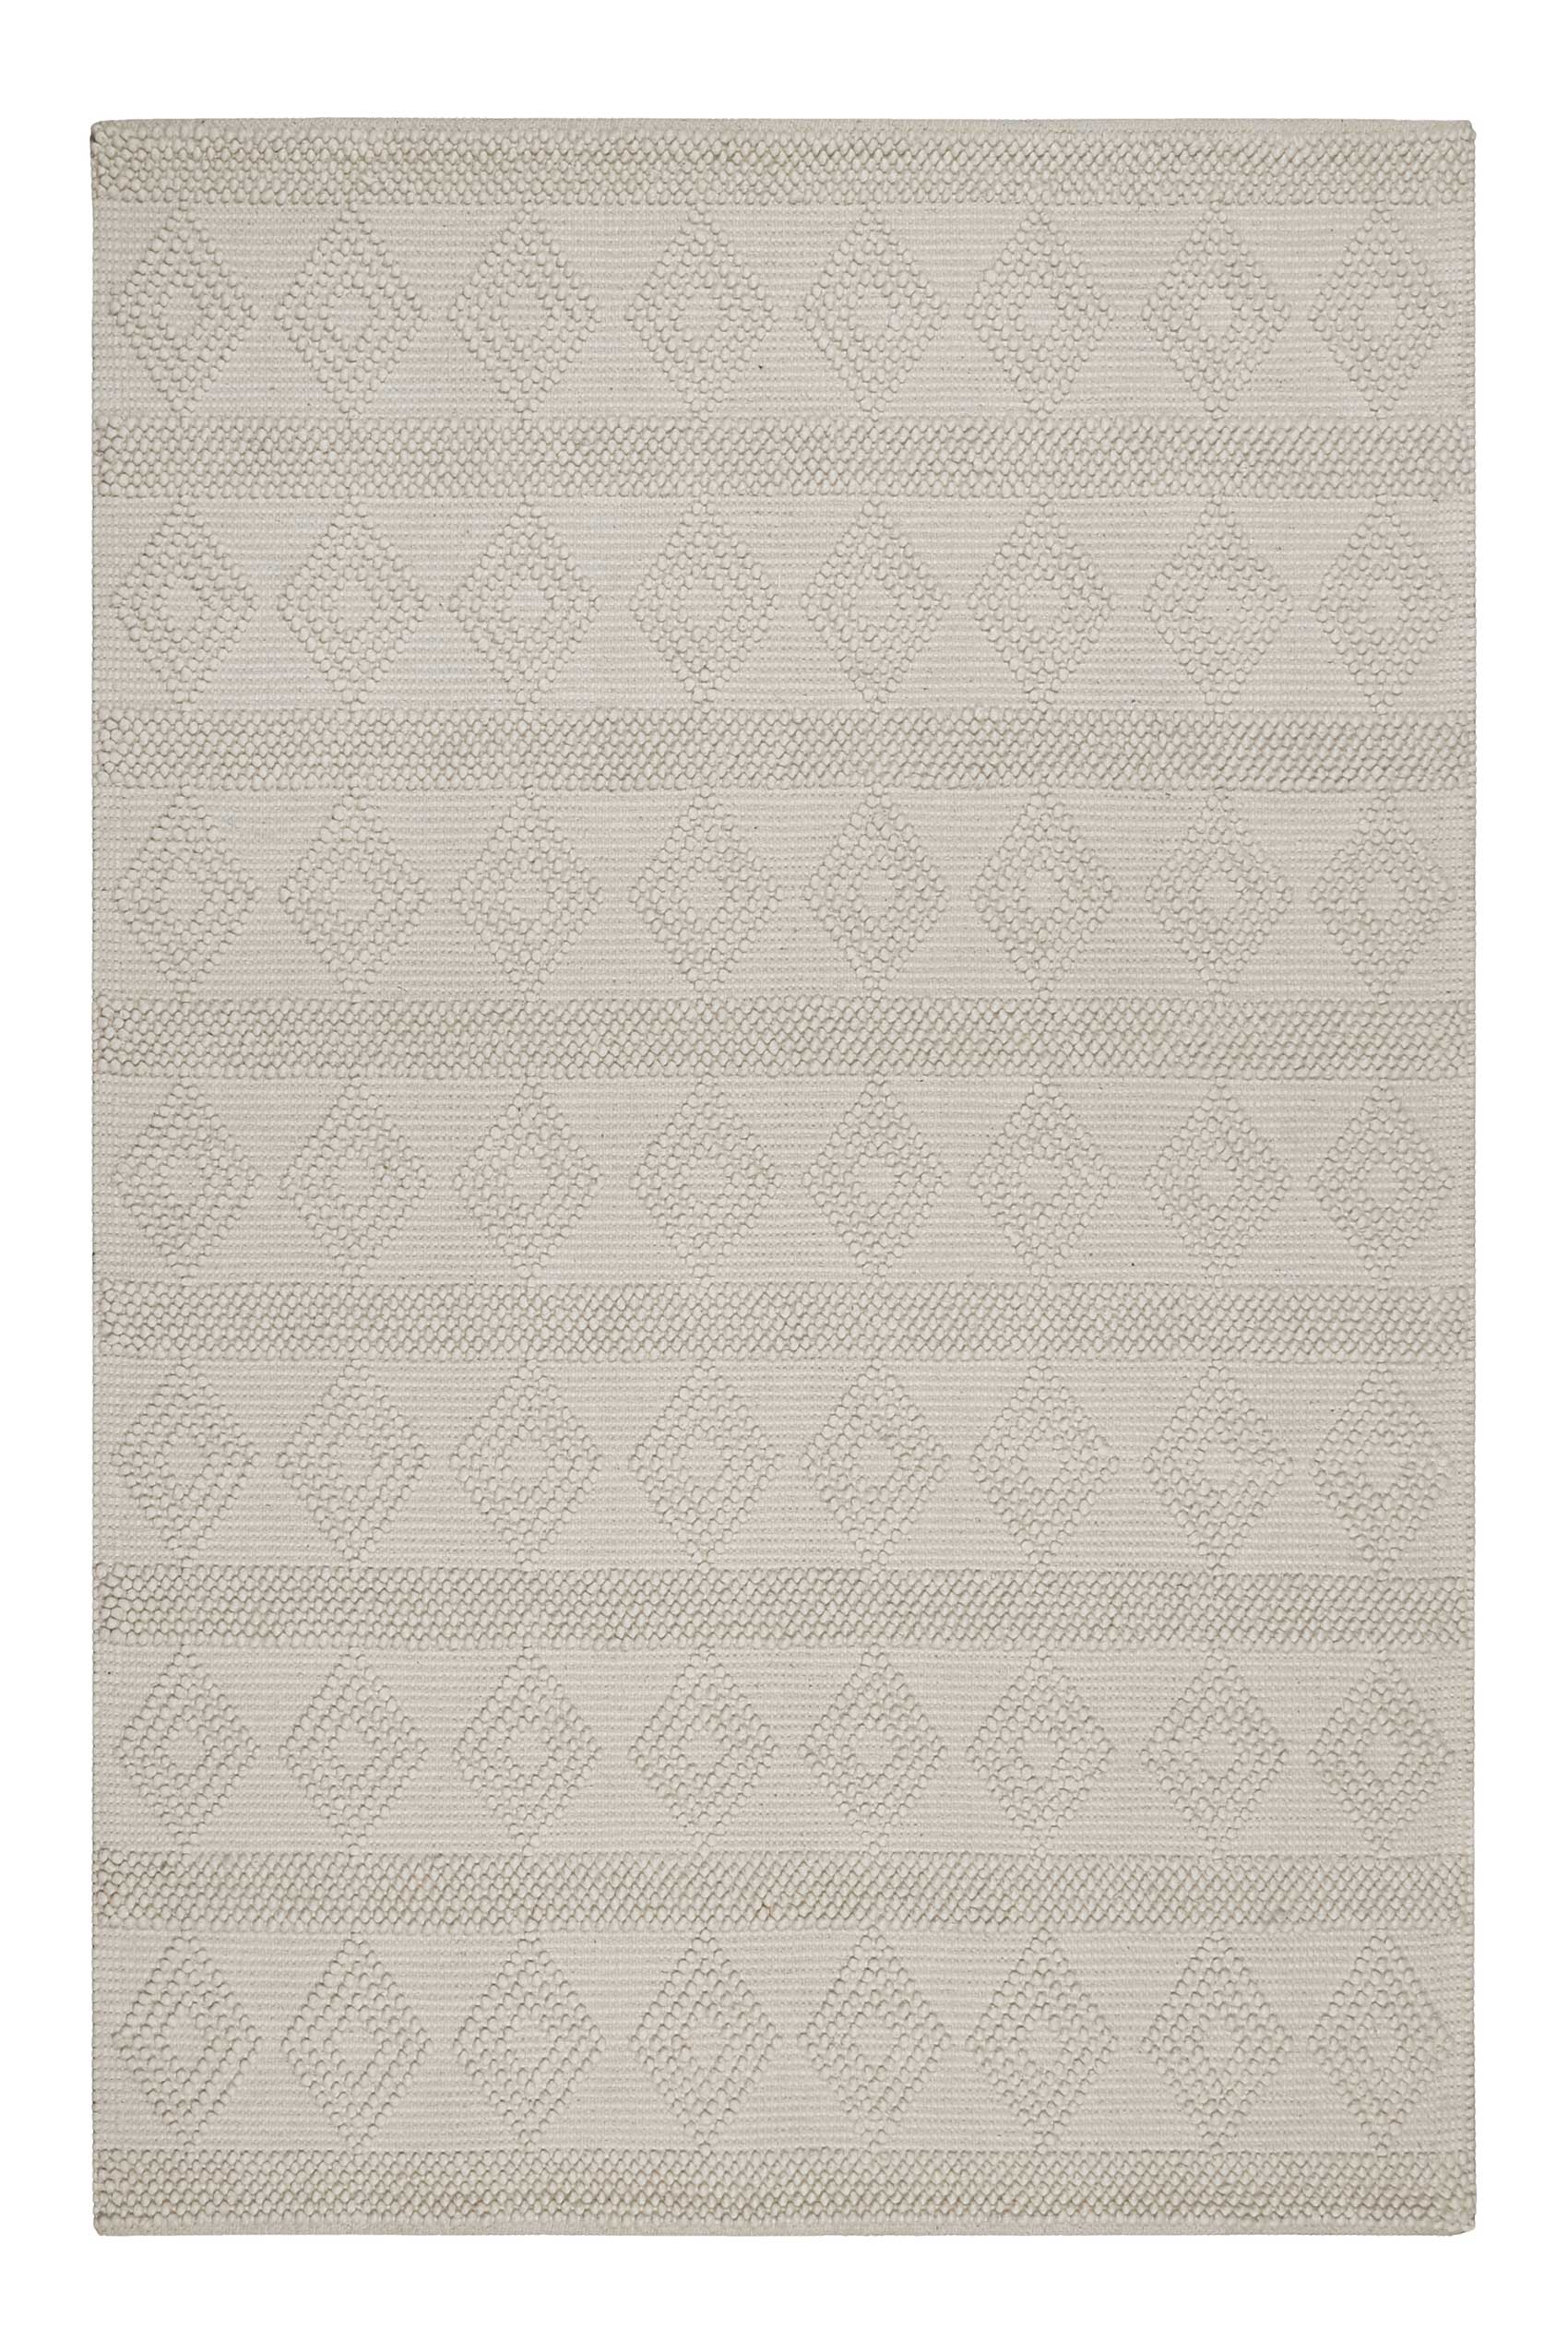 Esprit Teppich handgewebt Creme Weiß aus Wolle » Emmy « - Ansicht 1